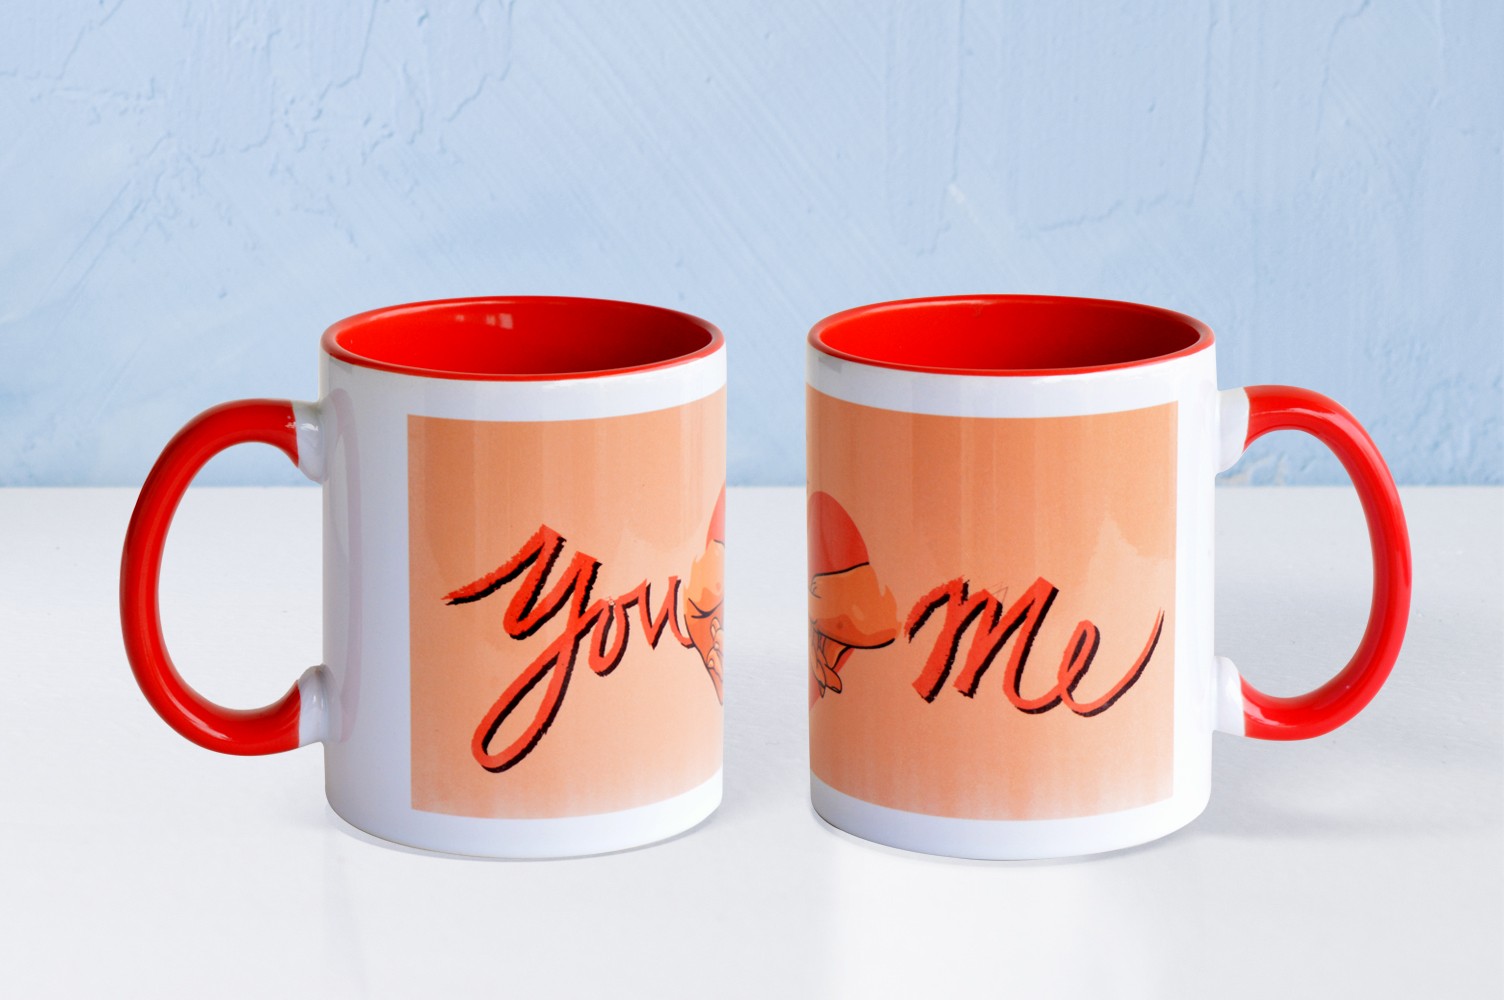 You and Me Mug